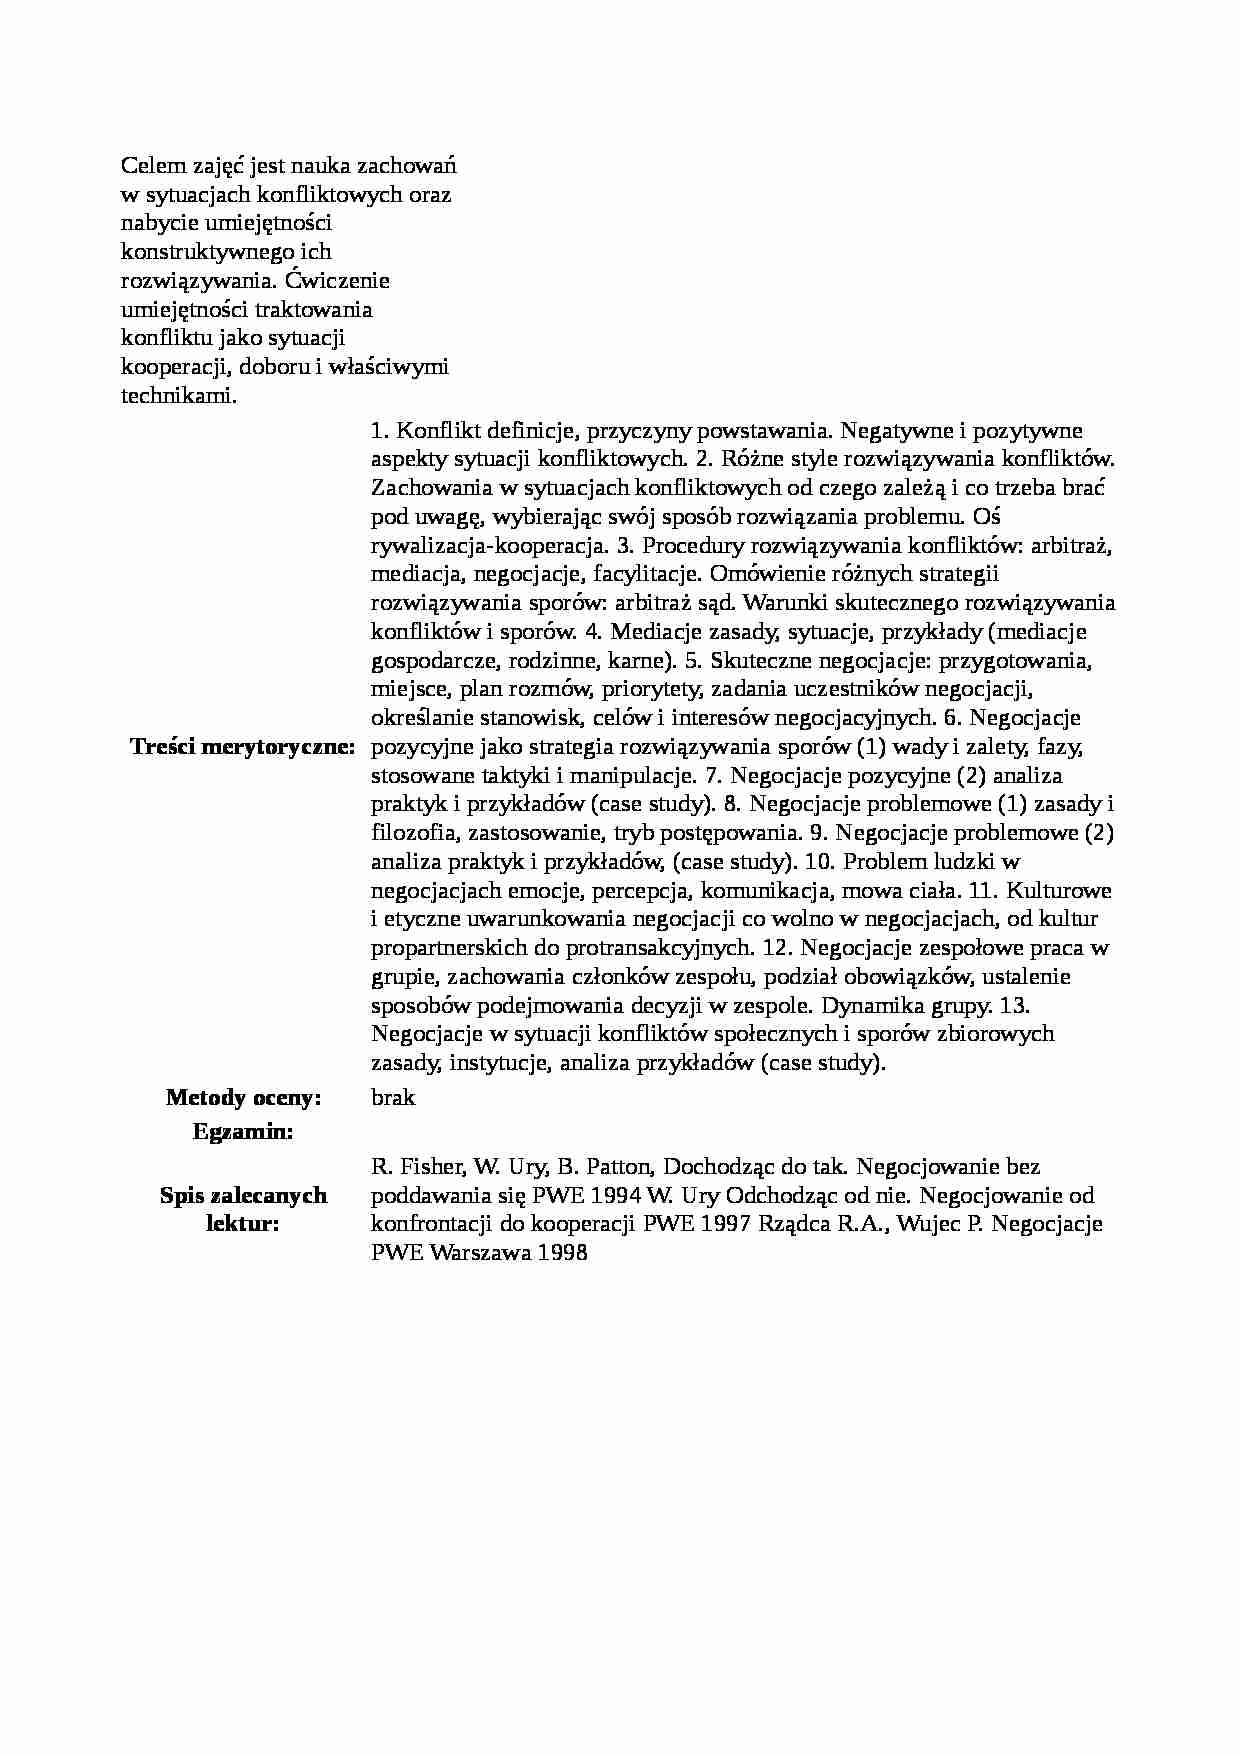 Techniki mediacji i negocjacji - Sylabus - strona 1